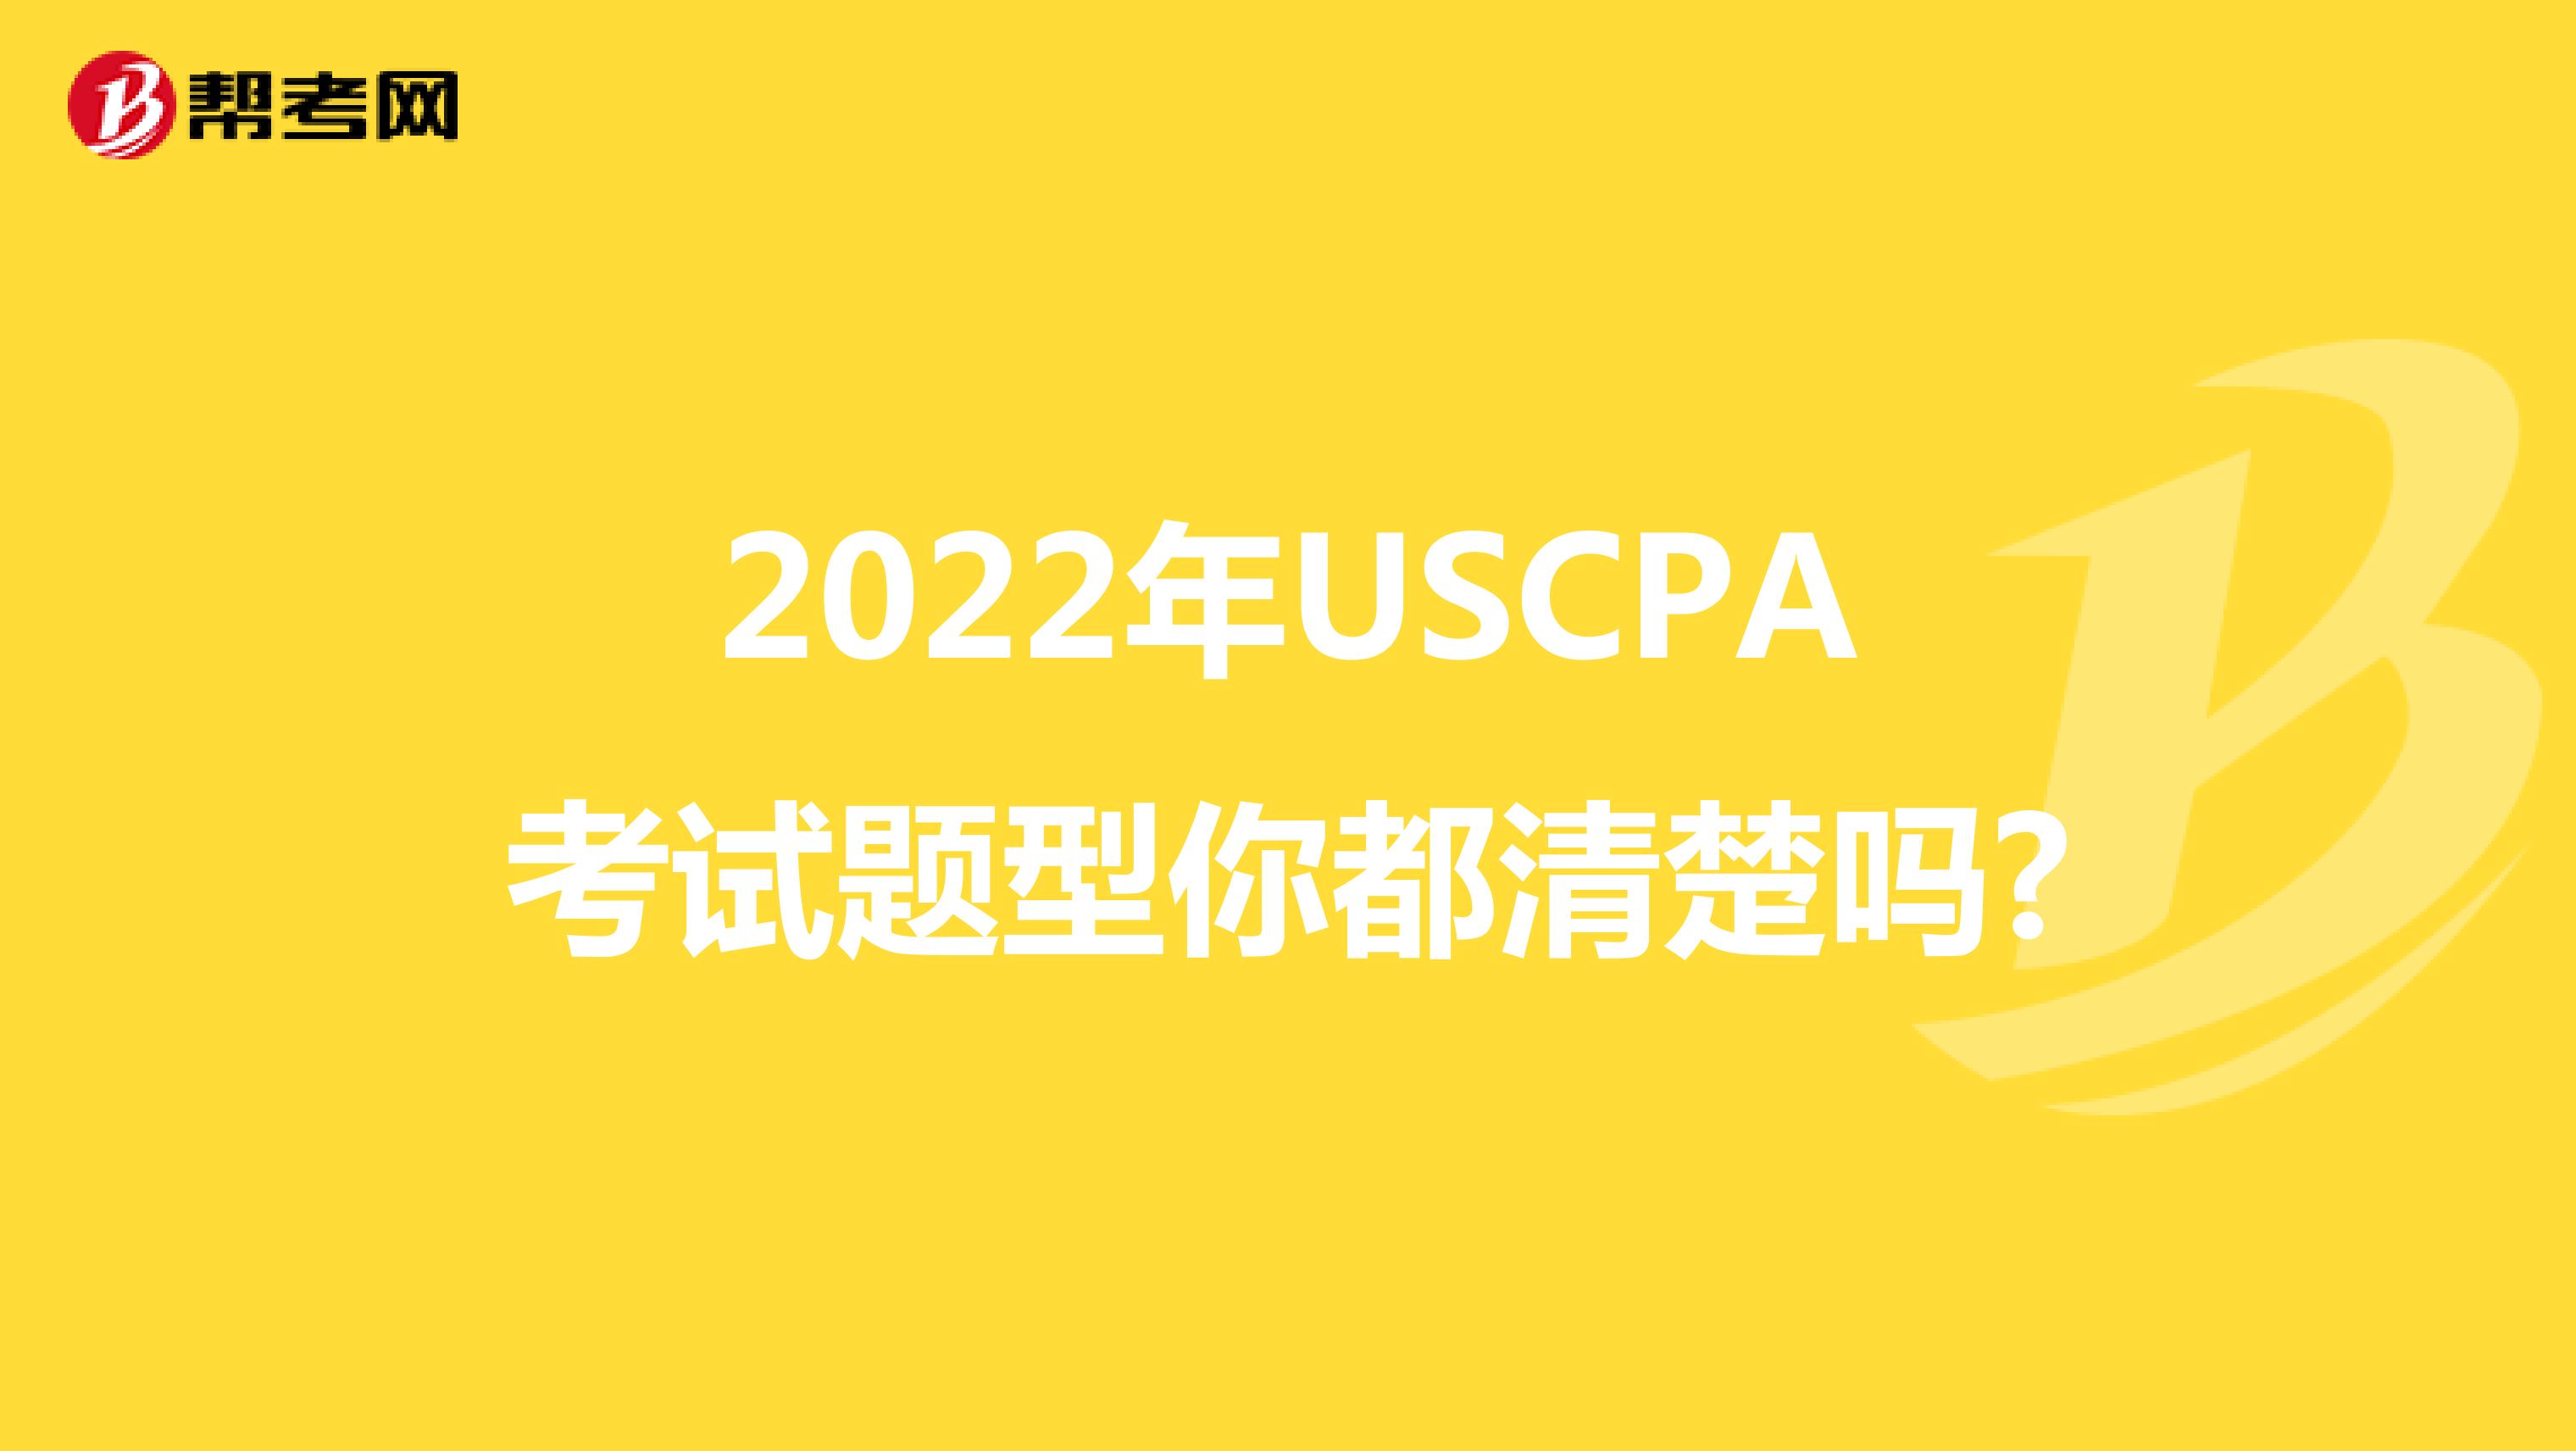 2022年USCPA考试题型你都清楚吗?